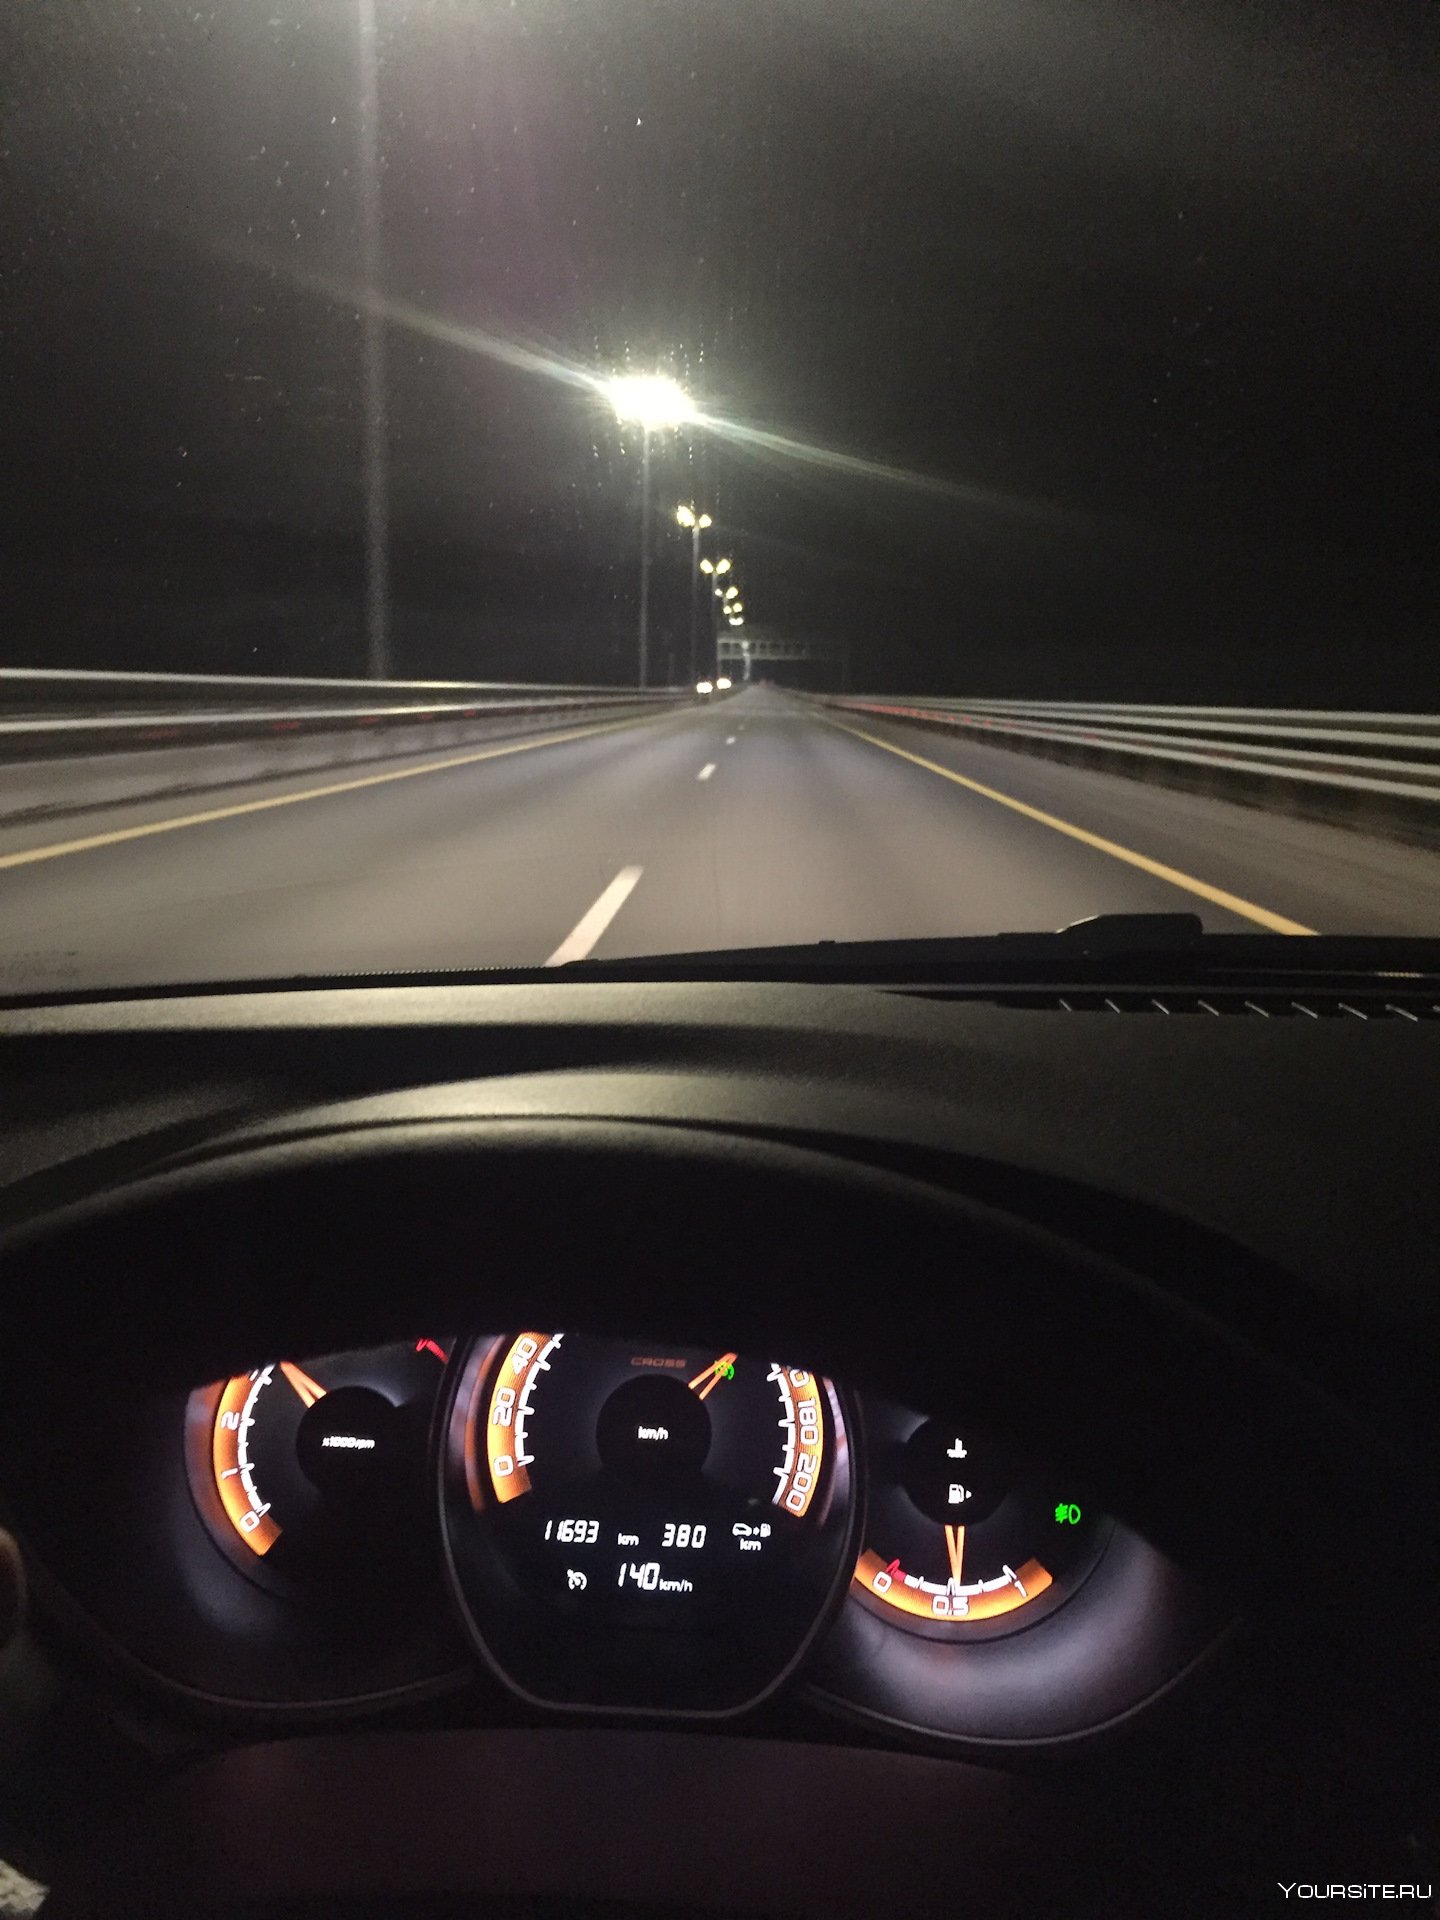 Гул в машине на скорости. Ночь дорога за рулем. Машина ночью на дороге. Вид из салона автомобиля. Ночная дорога из салона машины.